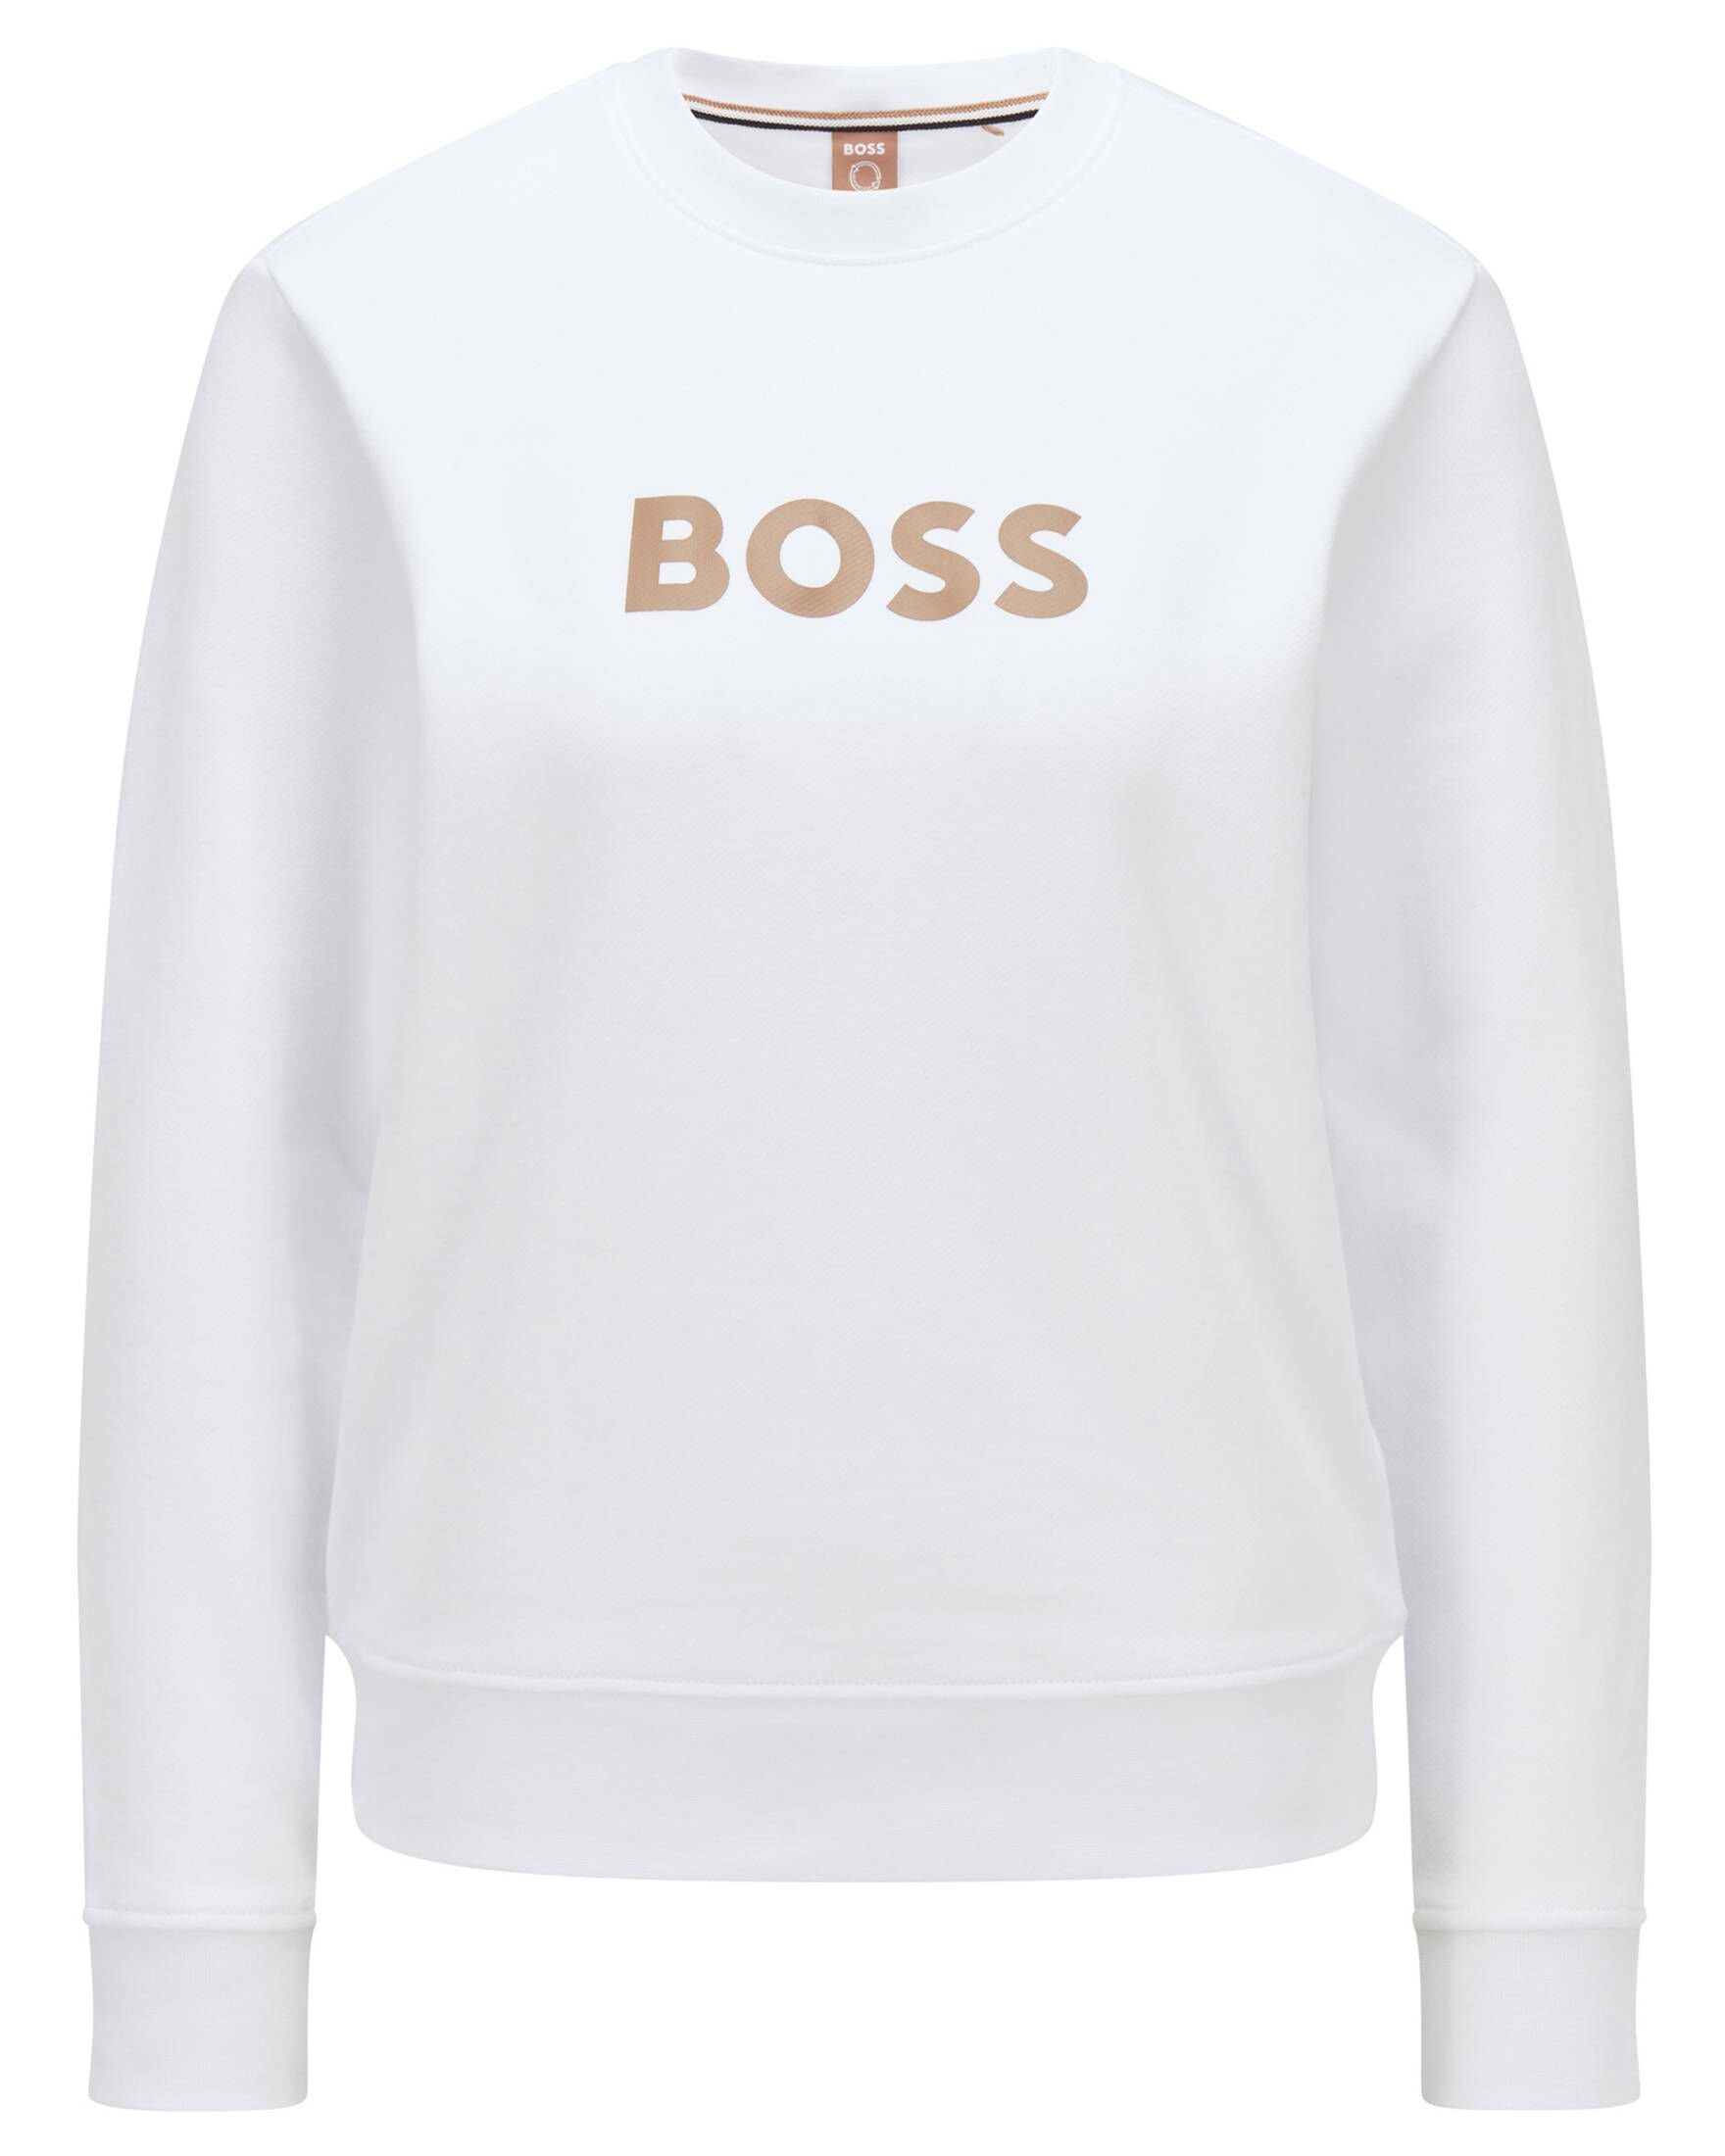 BOSS Damen Sweatshirts online kaufen | OTTO